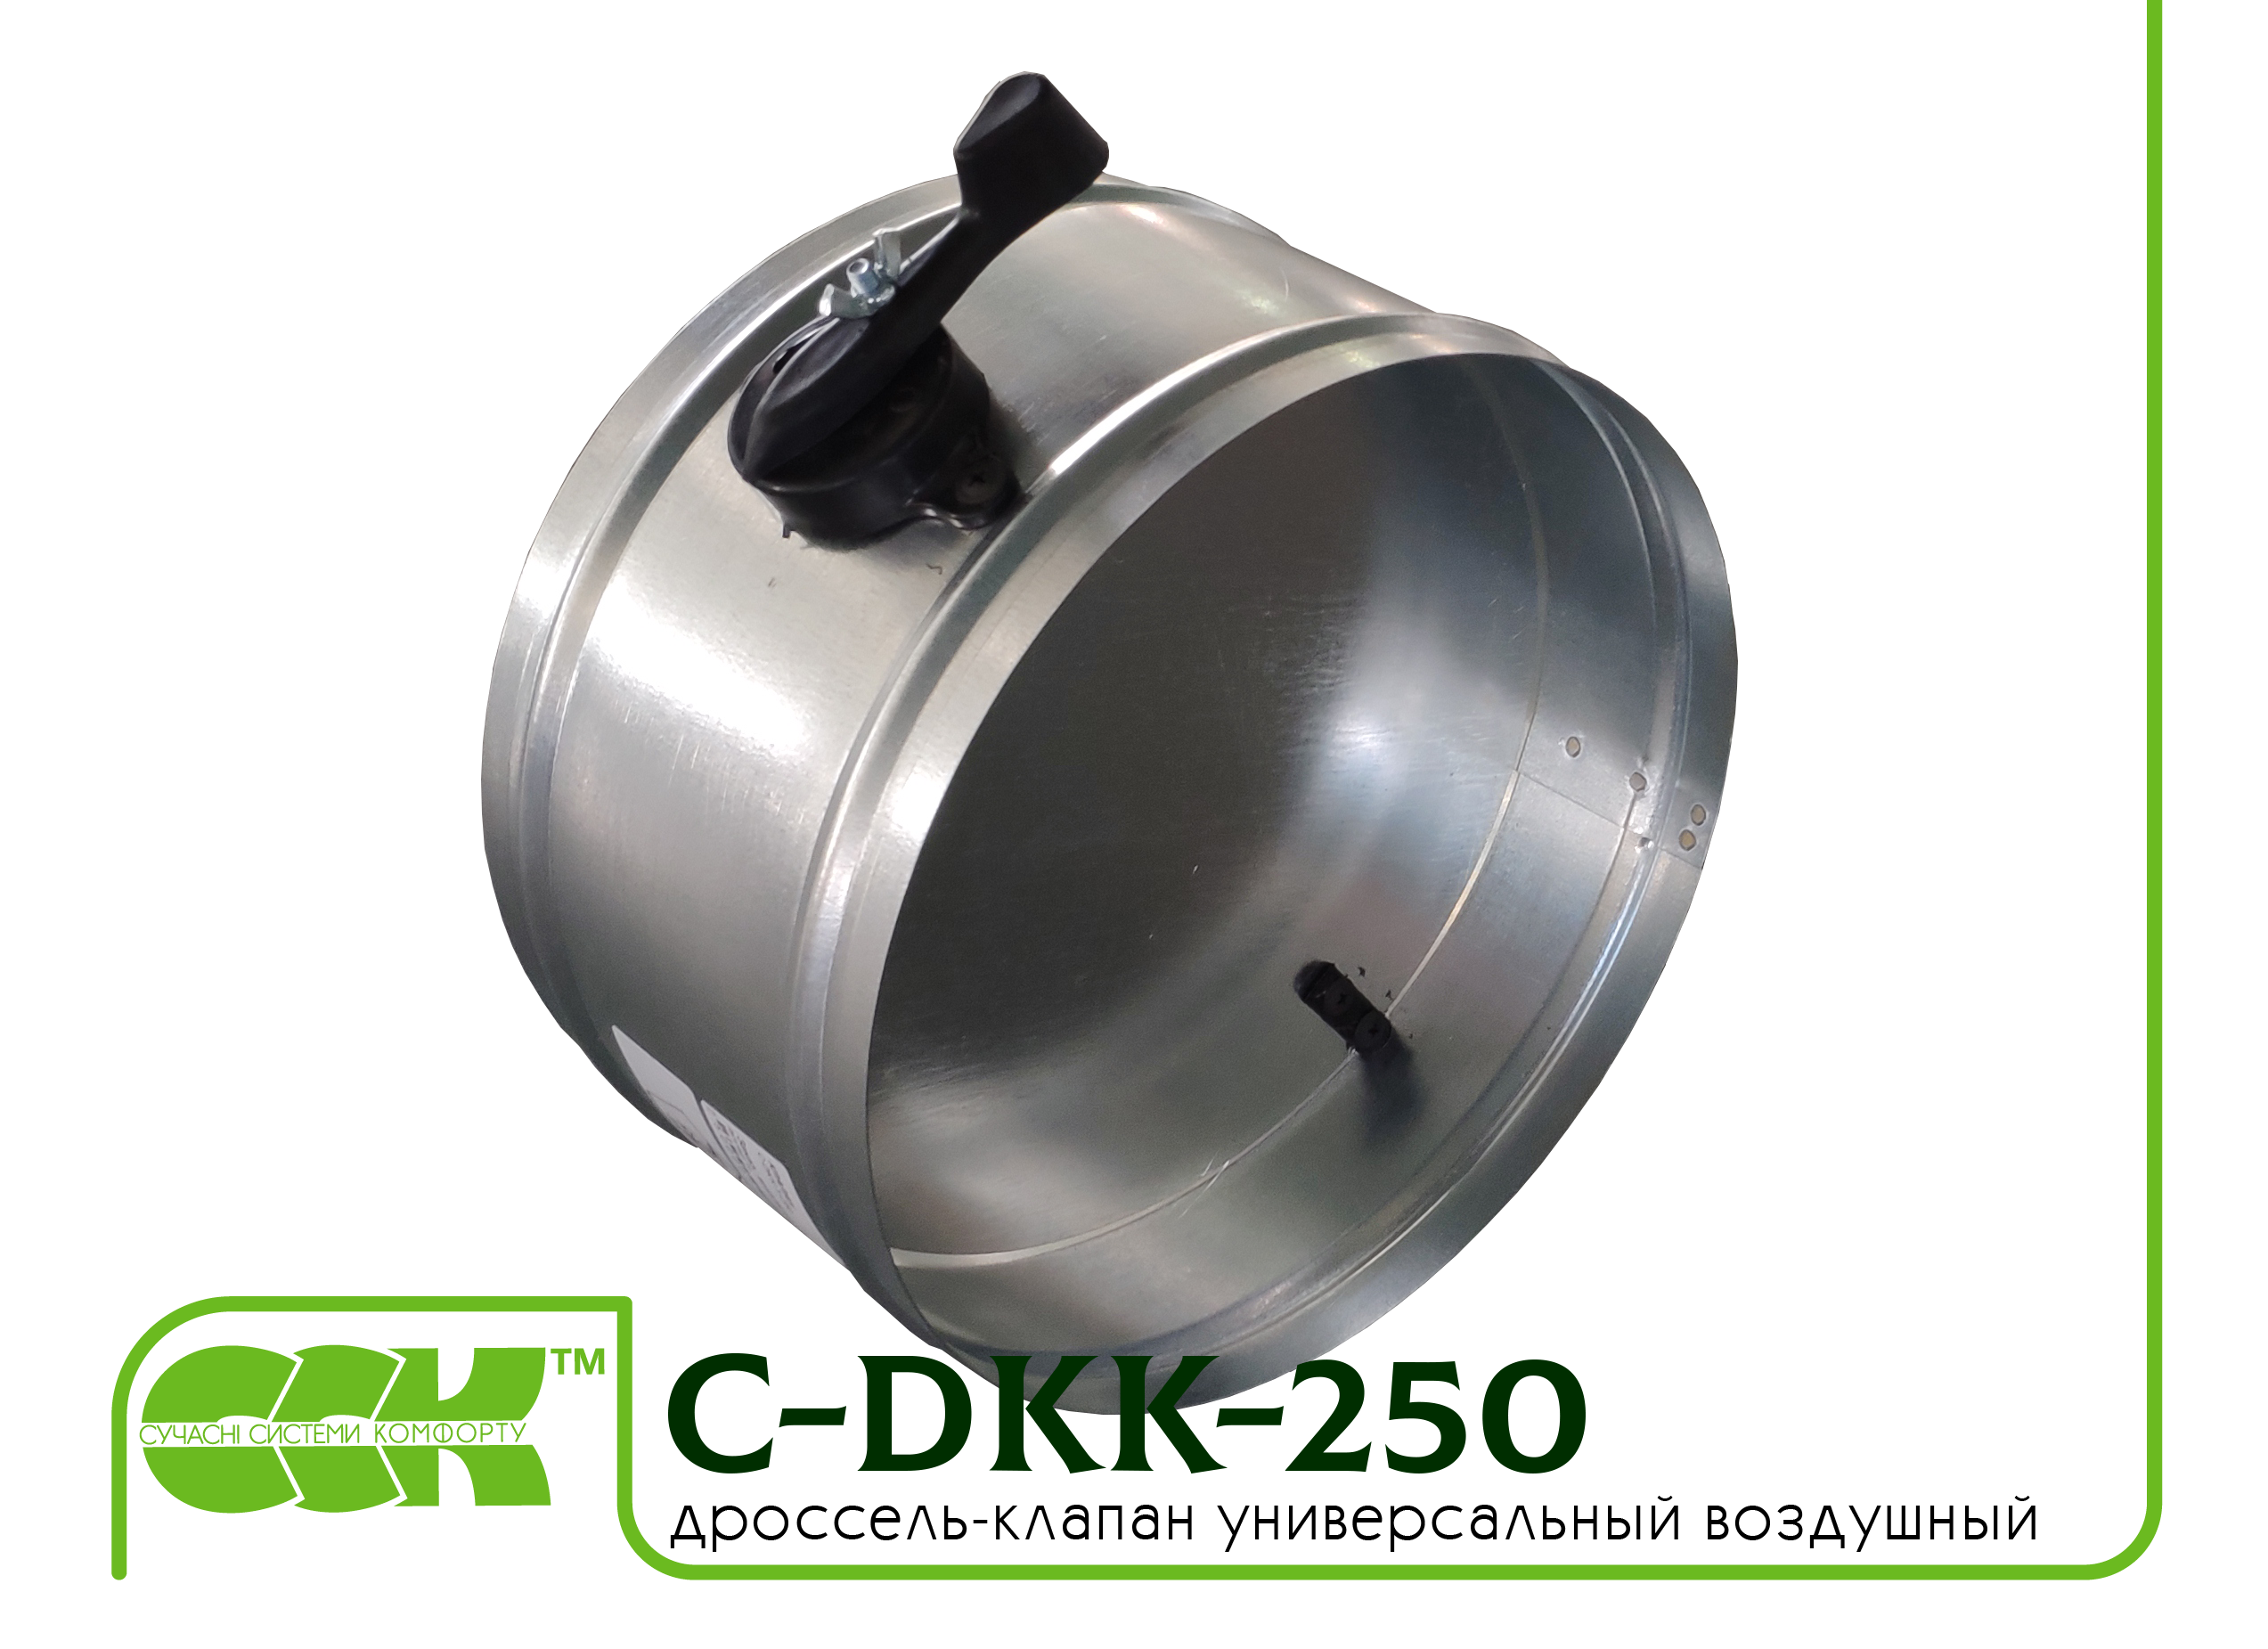 Дроссель-клапан воздушный универсальный C-DKK-250